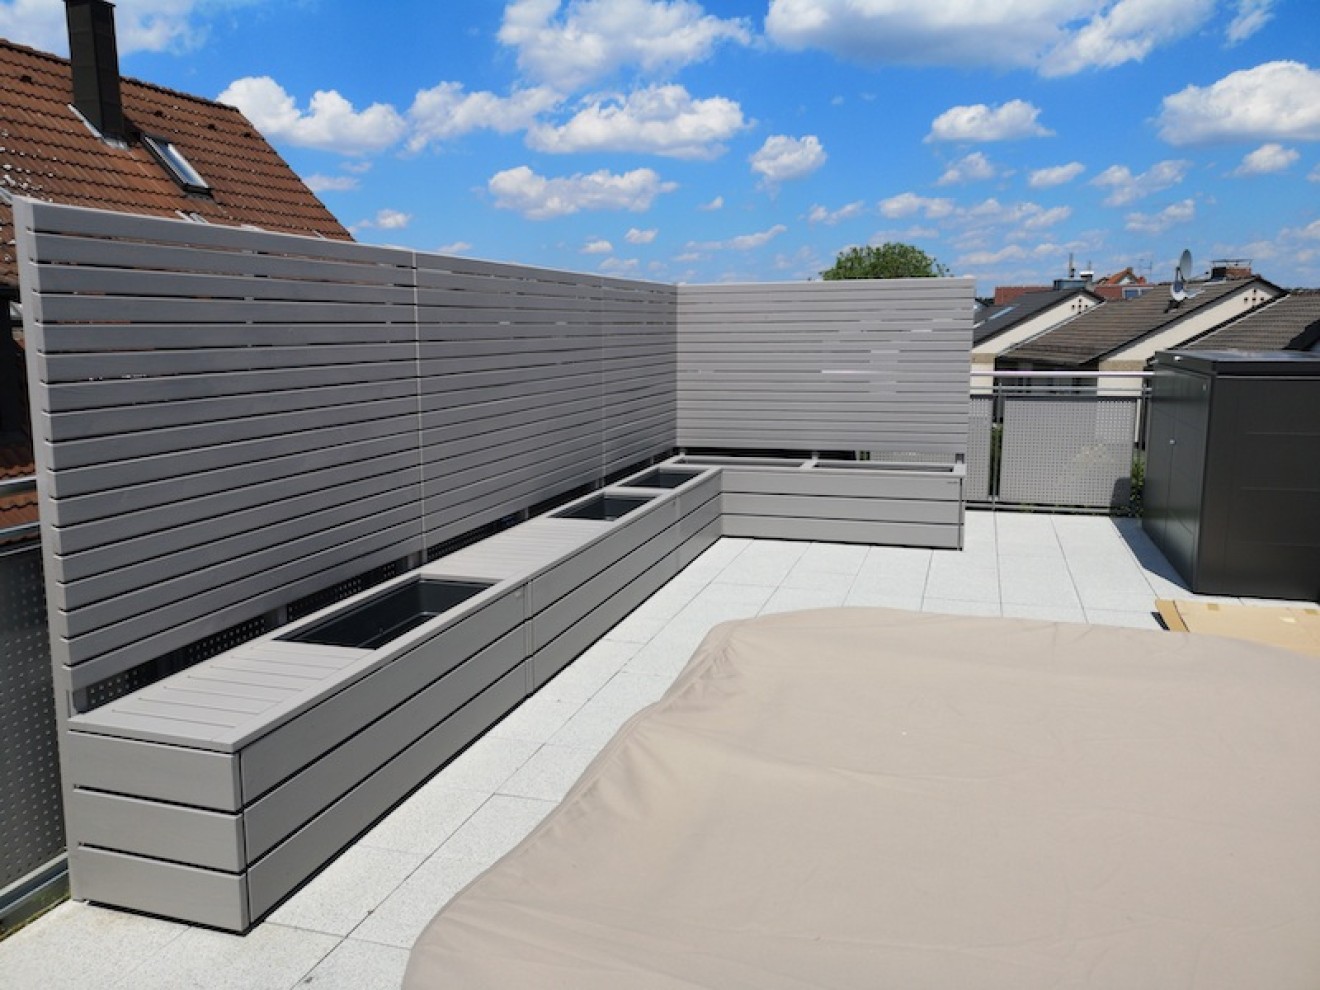 (400923) Sichtschutz Ecke für Dachterrasse mit Pflanzkasten & Sitzbank, Oberfläche: RAL 7036 Platingrau